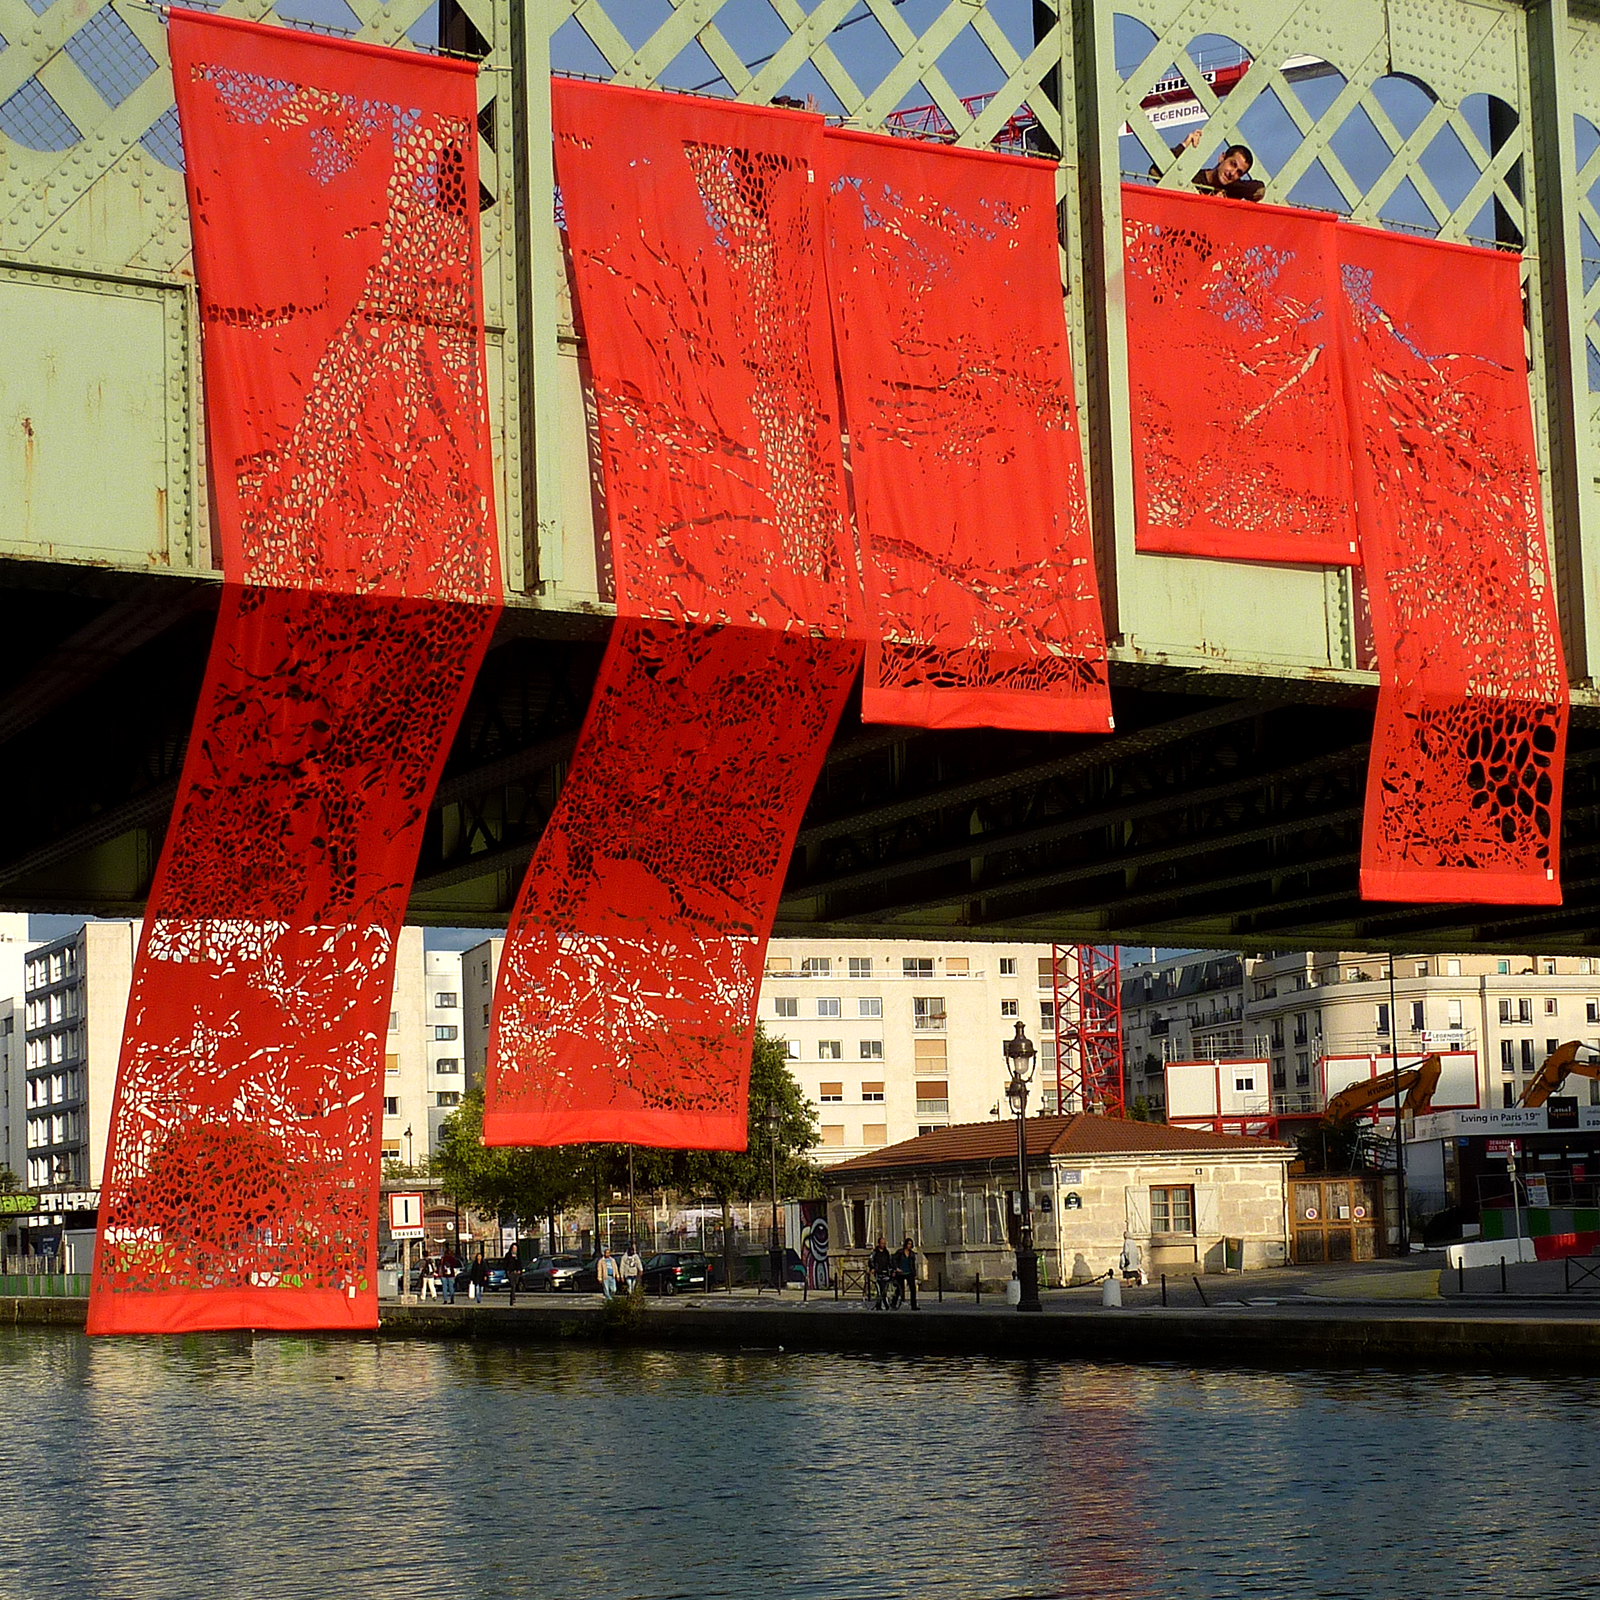 Installation géante composée de 5 kakémonos de papier découpé suspendus sur le pont de l'Ourcq